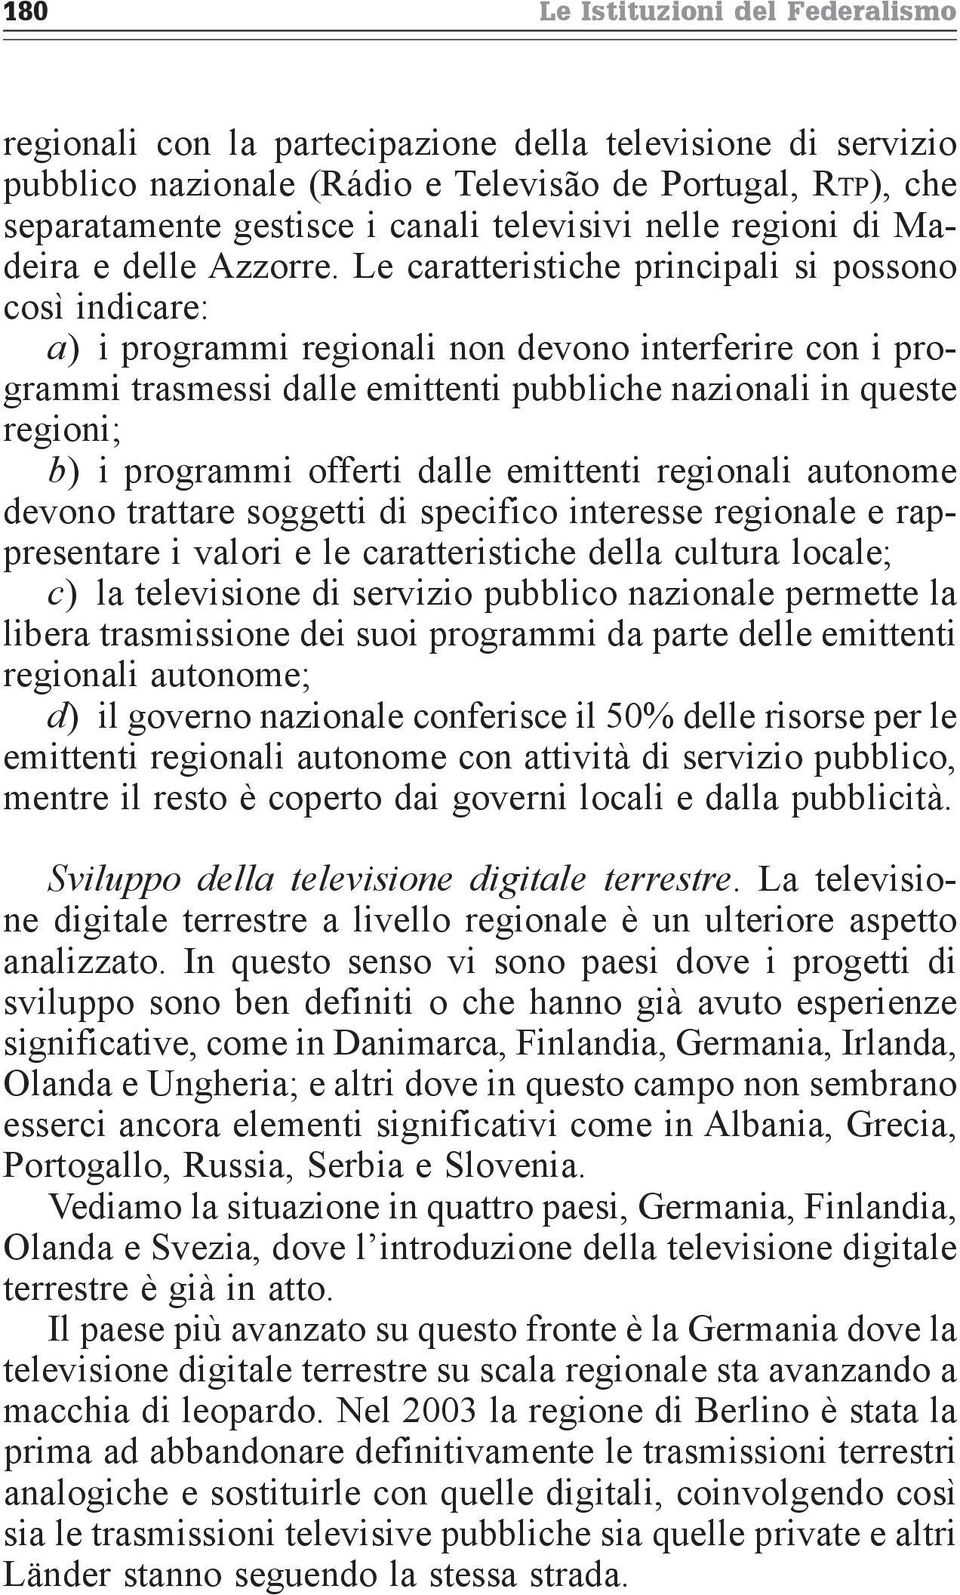 Le caratteristiche principali si possono così indicare: a) i programmi regionali non devono interferire con i programmi trasmessi dalle emittenti pubbliche nazionali in queste regioni; b) i programmi